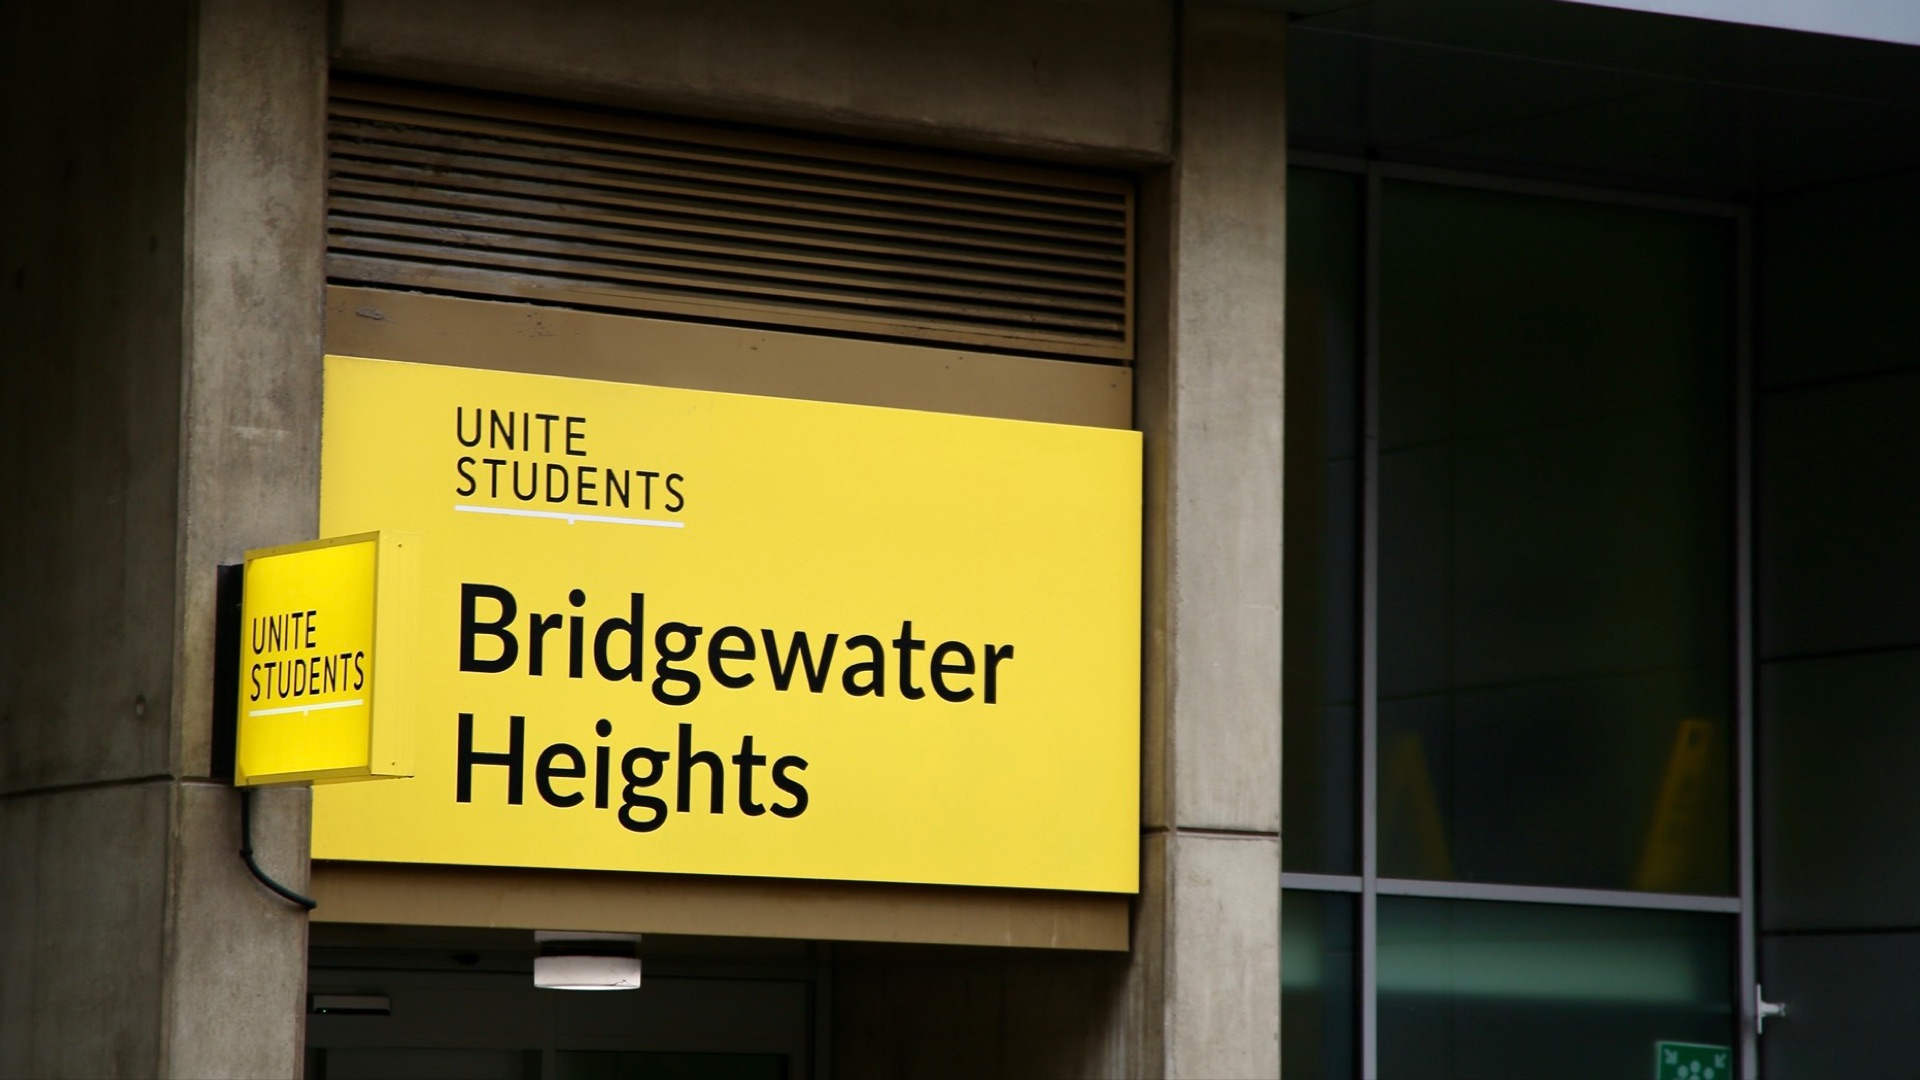 Student accommodation signage